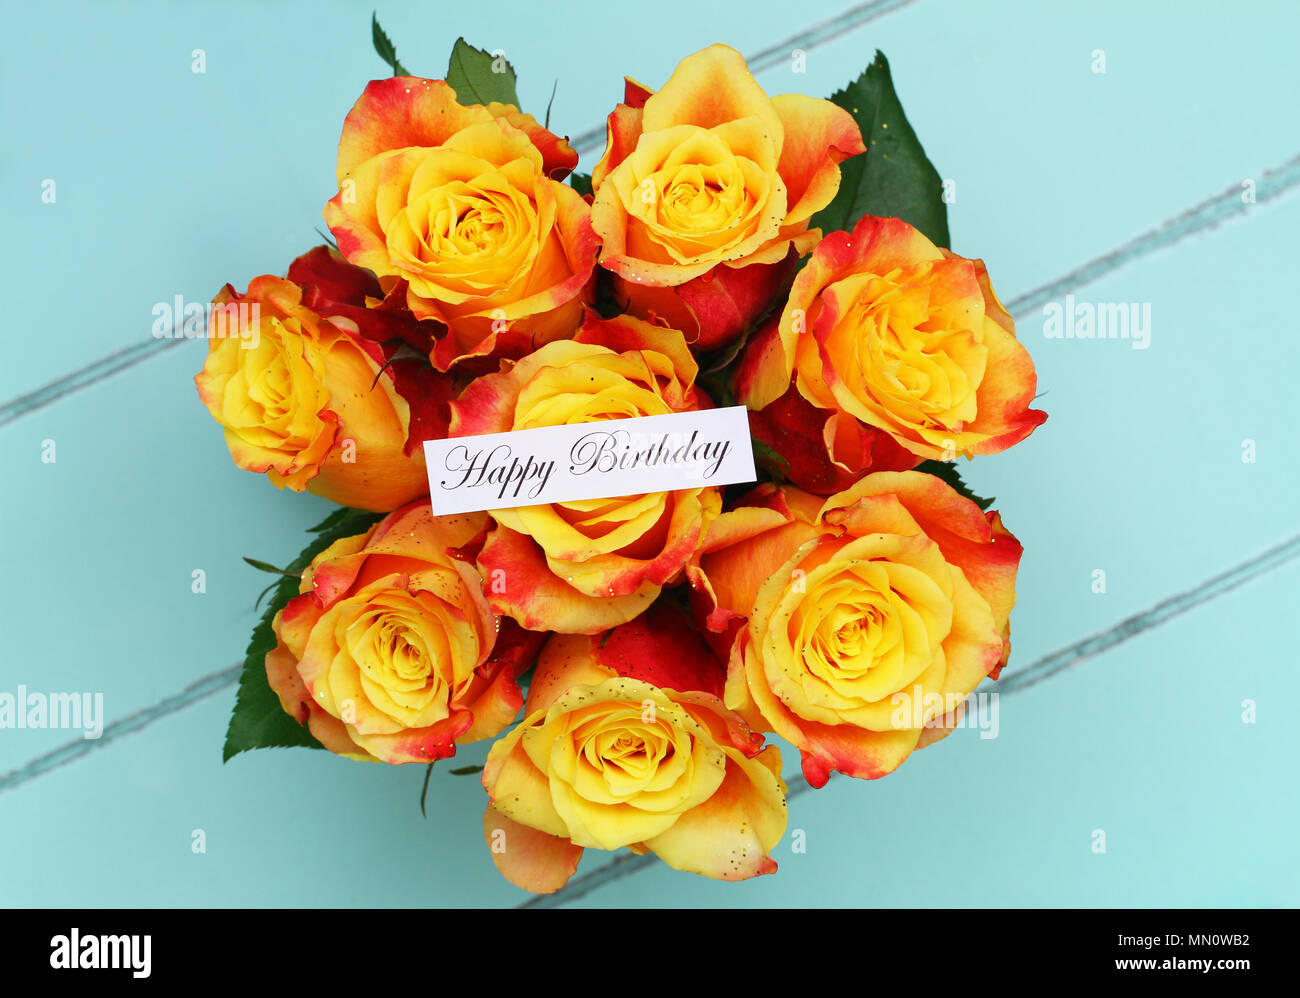 Buon Compleanno Card Con Bouquet Di Rose Cosparso Con Glitter Su Legno Dipinto Di Blu Chiaro Foto Stock Alamy